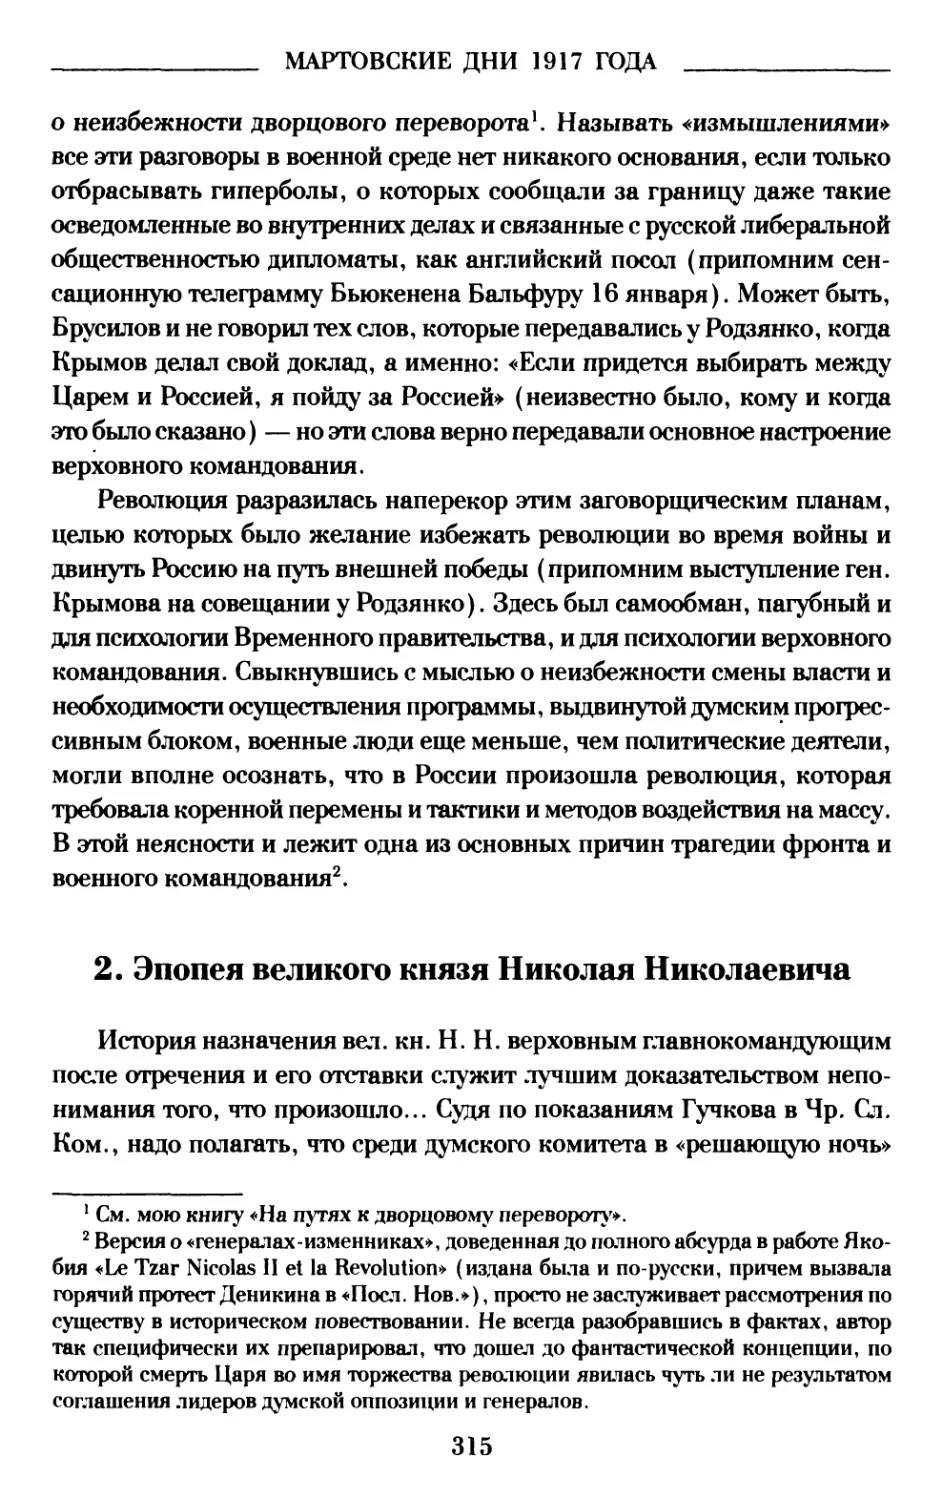 2. Эпопея великого князя Николая Николаевича